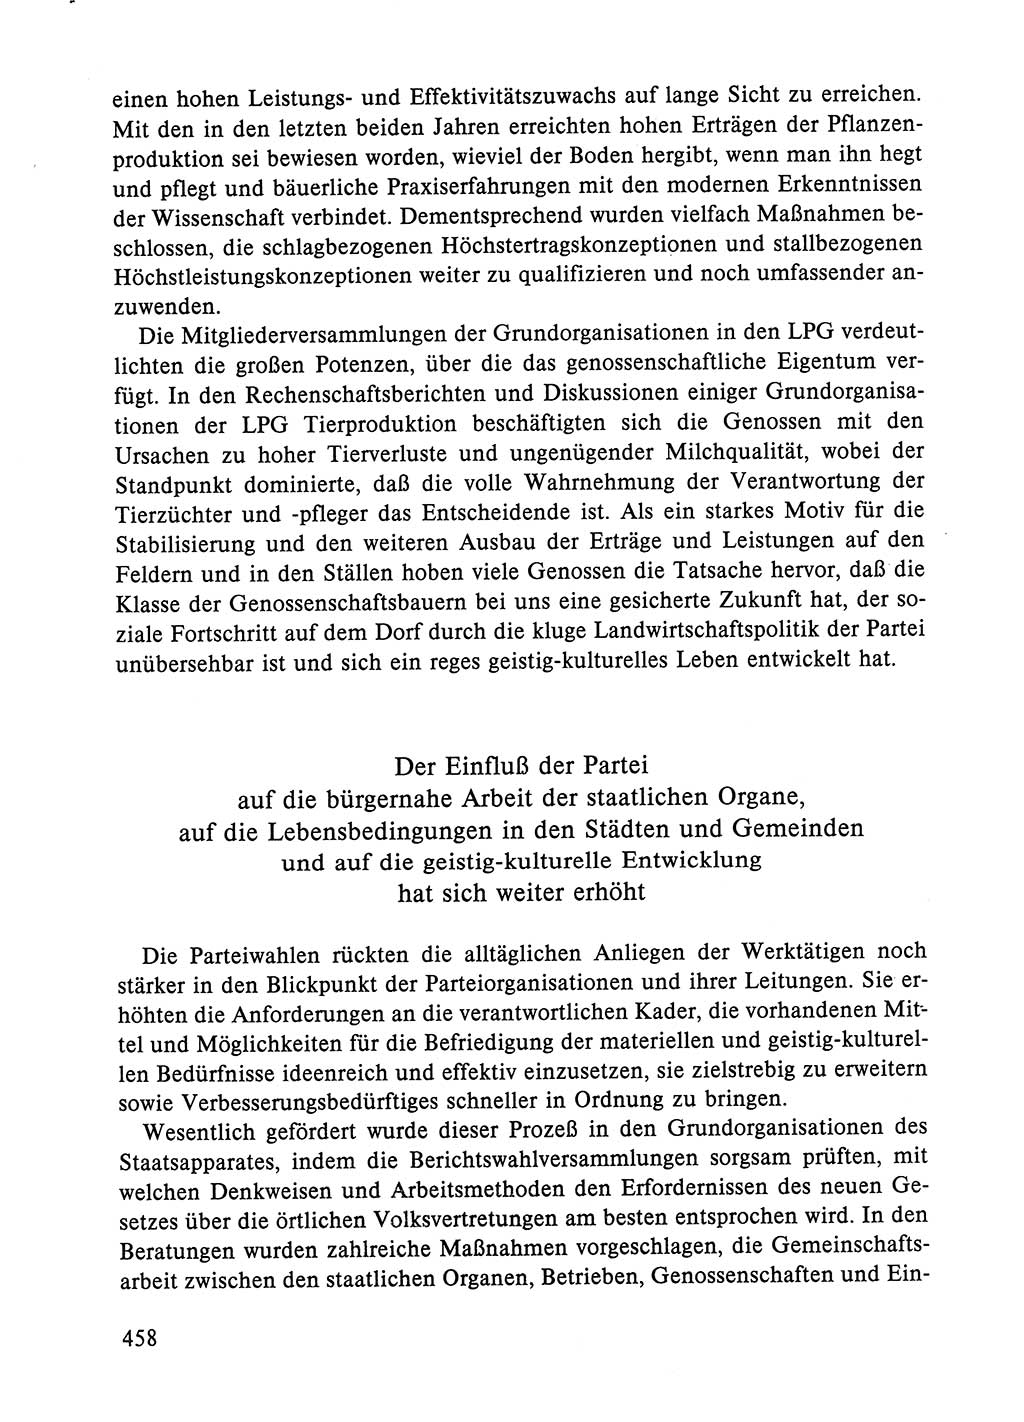 Dokumente der Sozialistischen Einheitspartei Deutschlands (SED) [Deutsche Demokratische Republik (DDR)] 1984-1985, Seite 458 (Dok. SED DDR 1984-1985, S. 458)